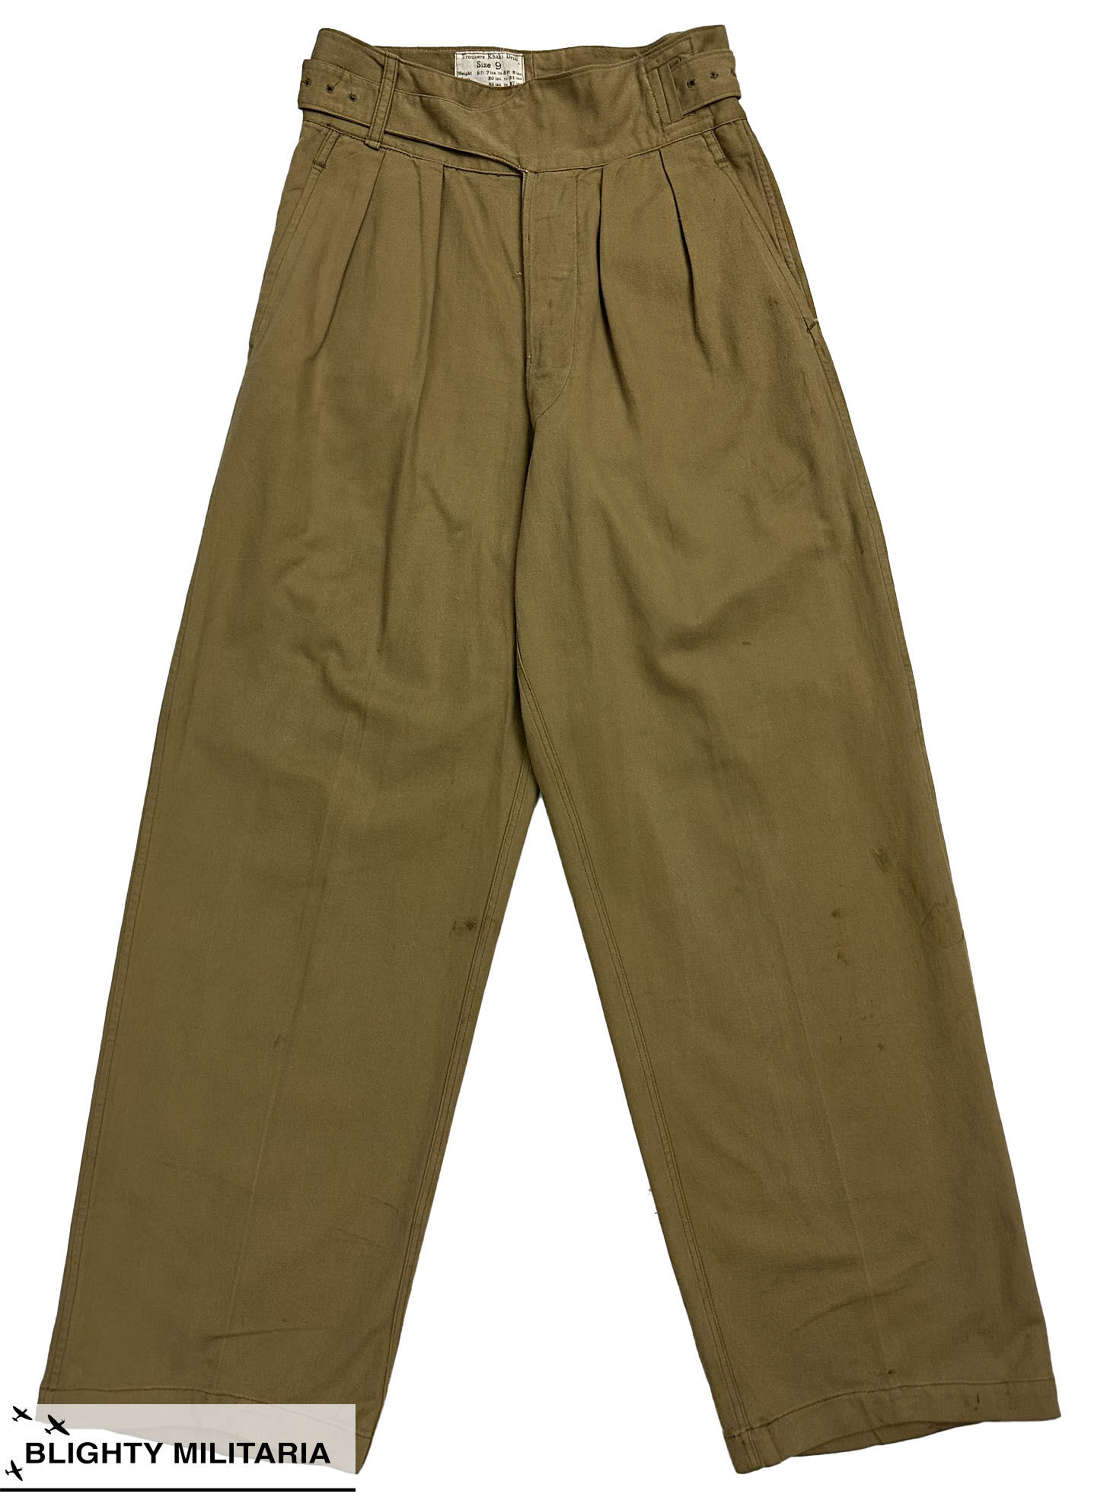 Original 1957 Dated 1950 Pattern Khaki Drill Trousers - Size 9